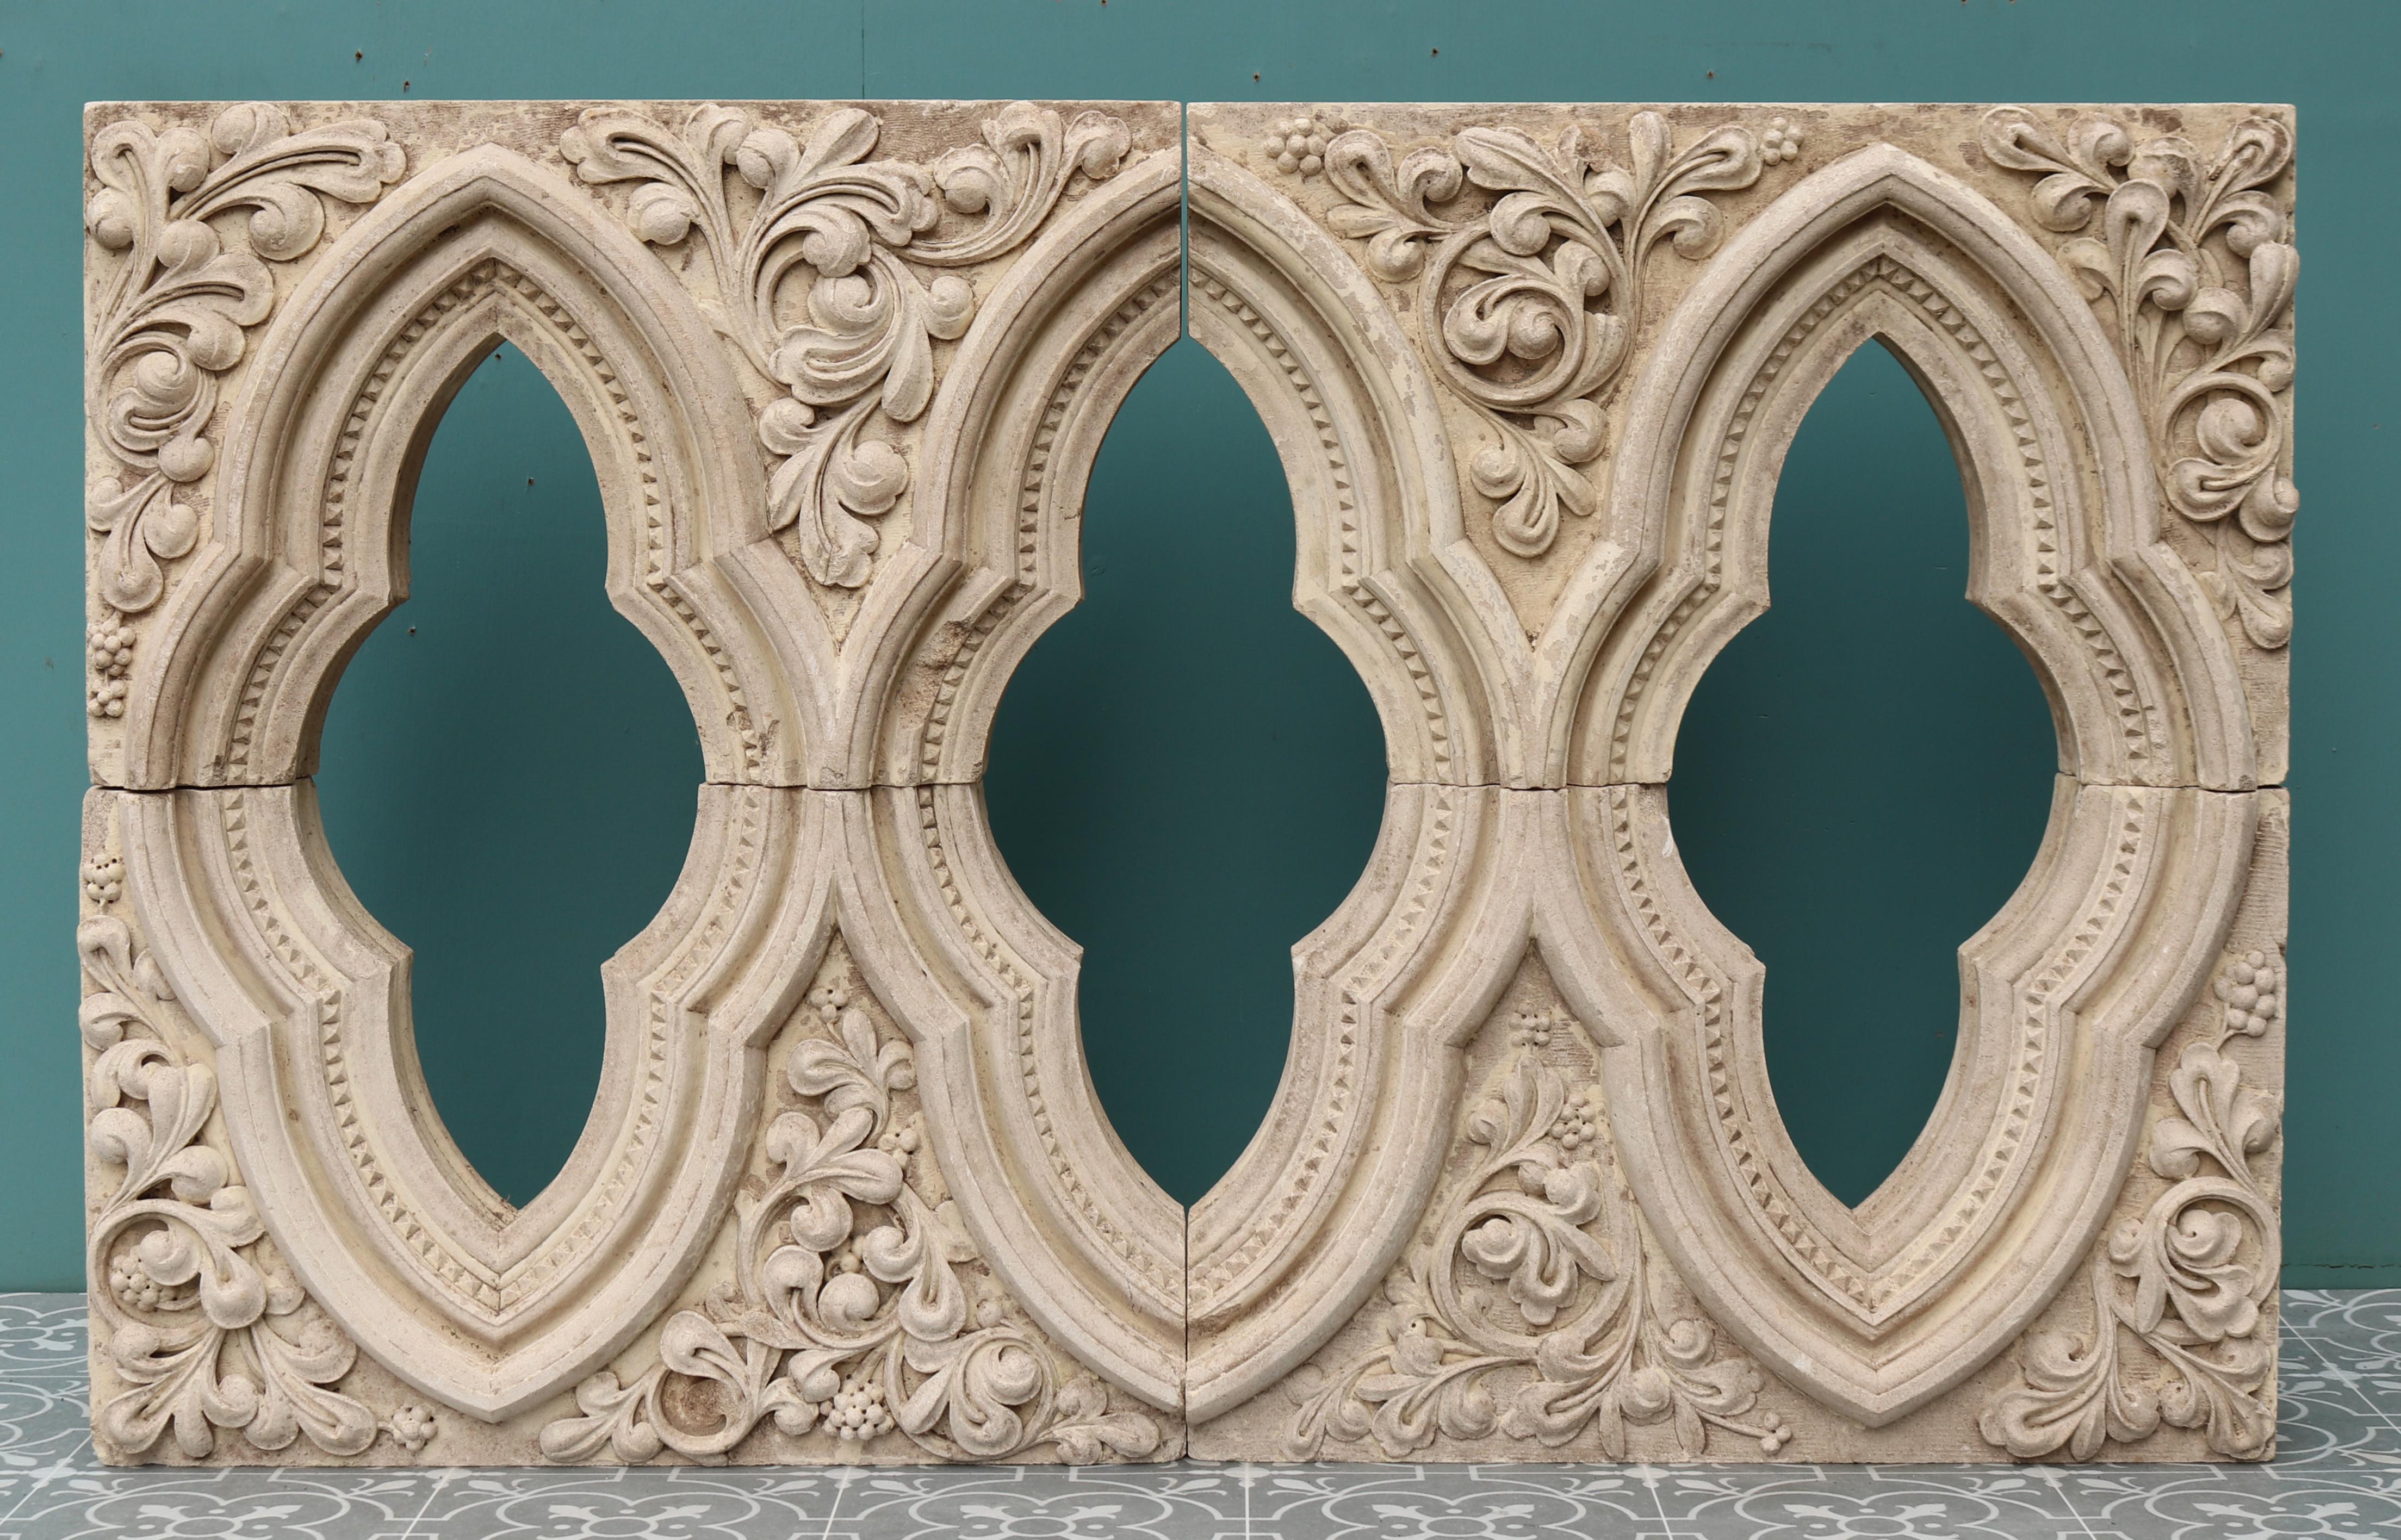 Ein reich geschnitztes Kalksteinfenster, das aus einer Kirche in Shropshire geborgen wurde.